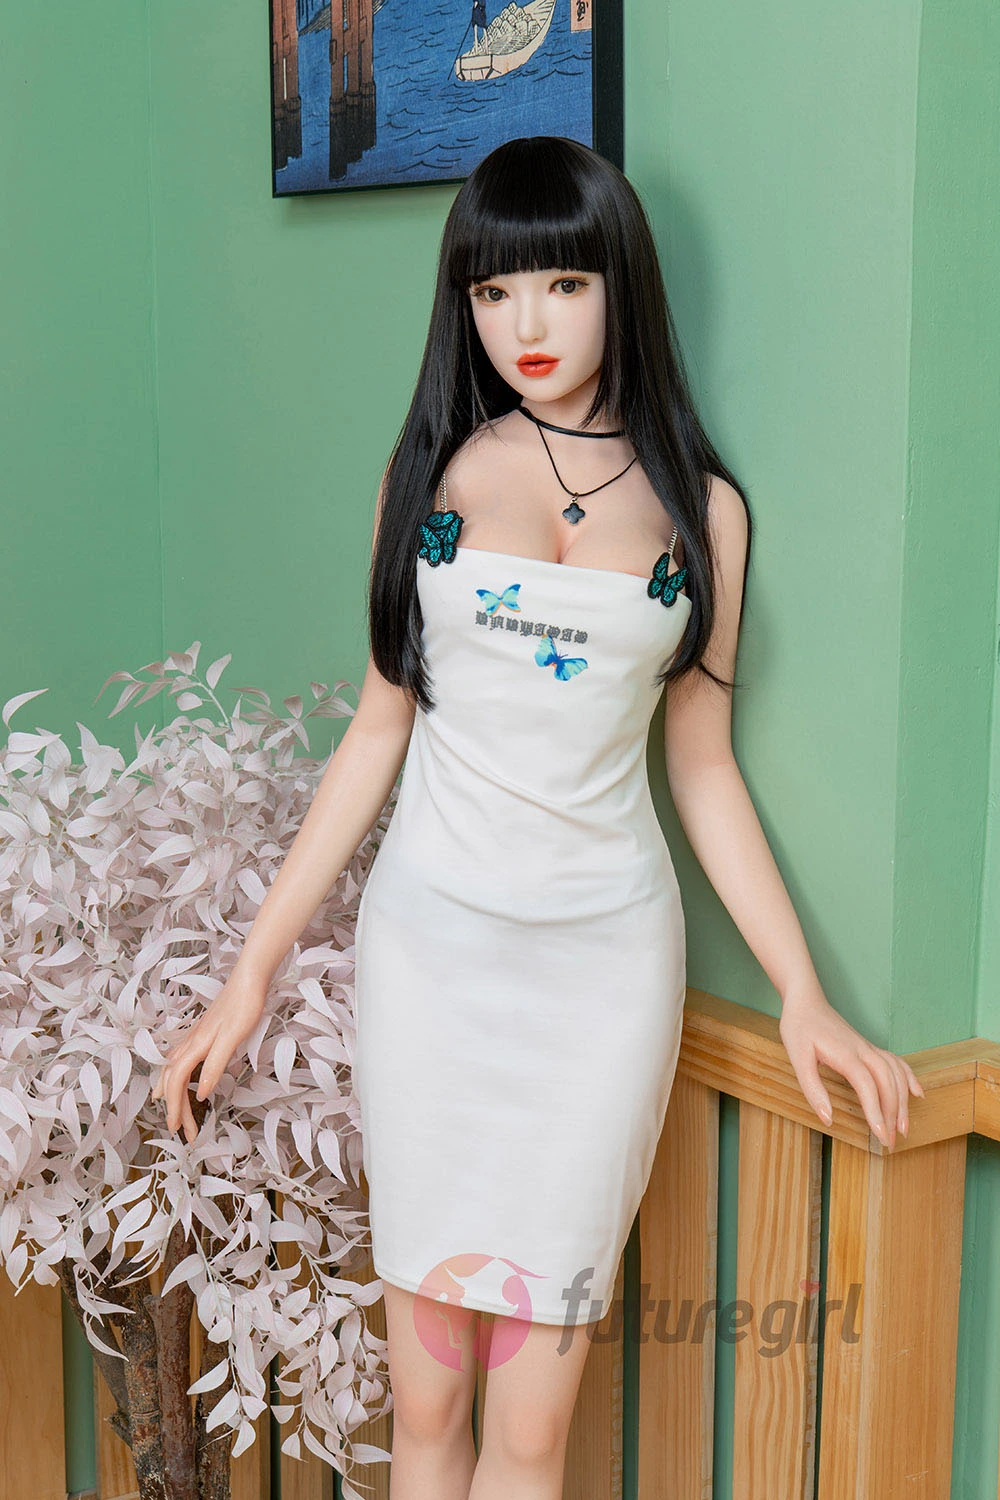  full size asian sexdoll wearing white dress